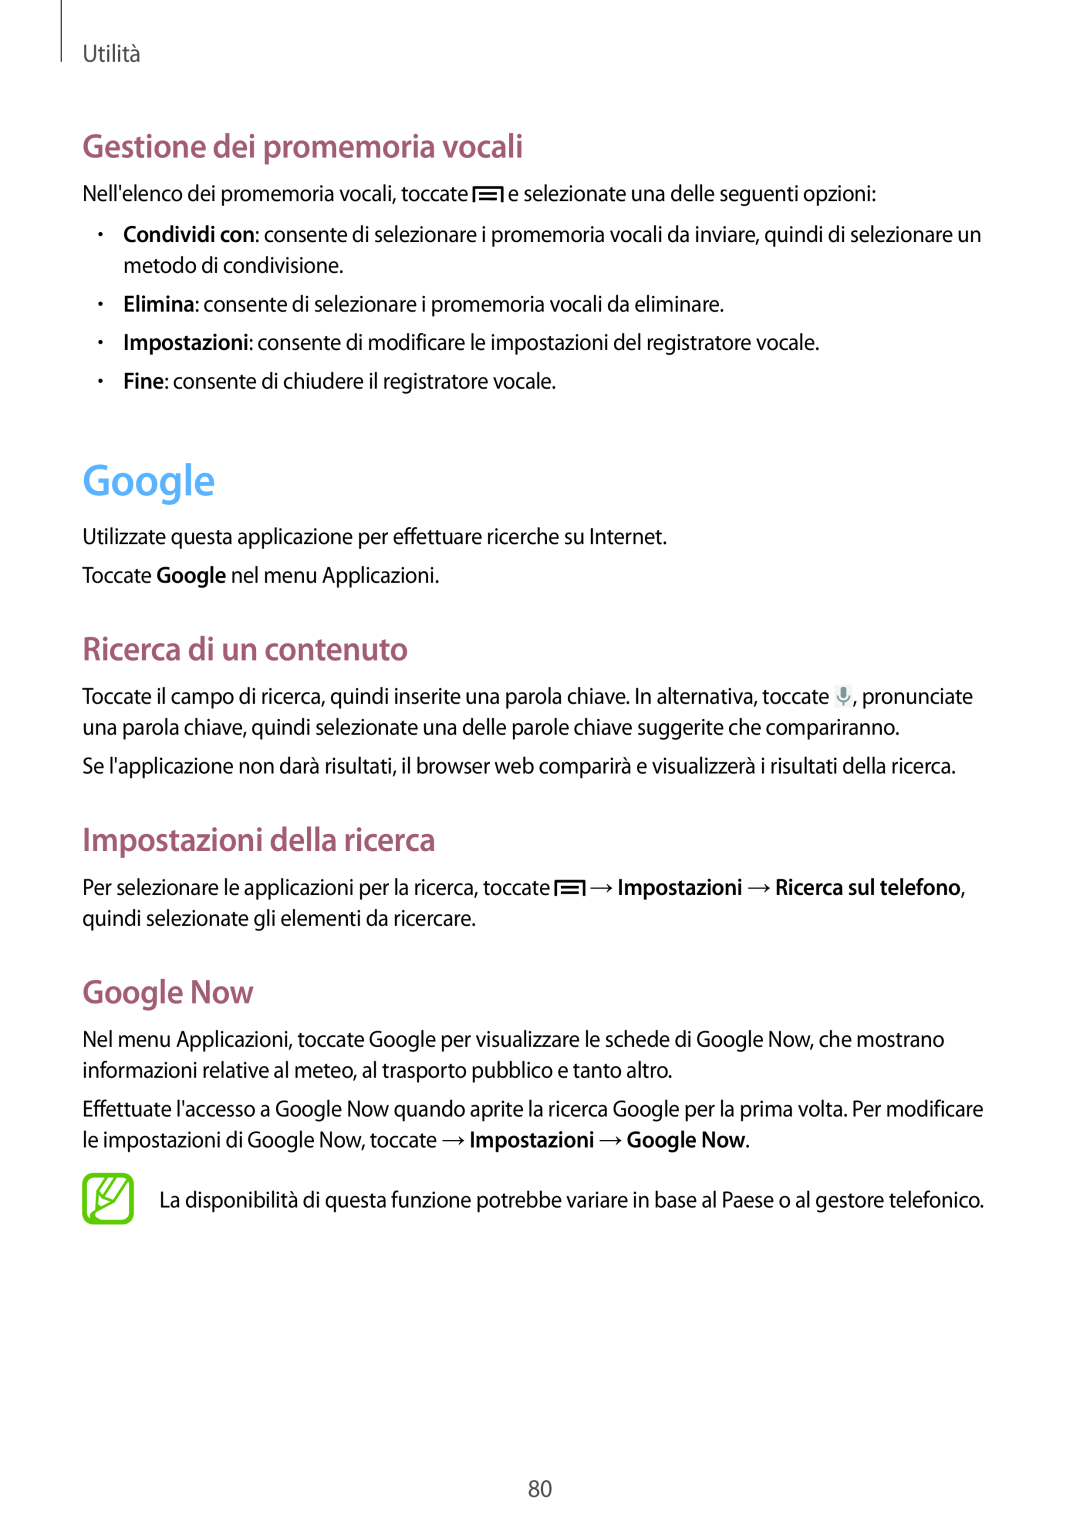 Samsung GT-S6810PWNITV manual Google, Gestione dei promemoria vocali, Ricerca di un contenuto, Impostazioni della ricerca 